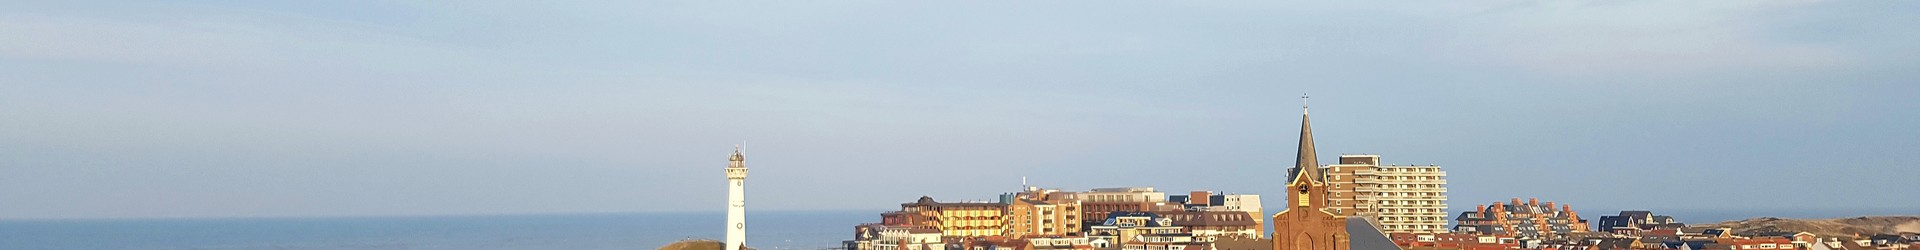 Egmond aan Zee vanaf Torensduin.jpg